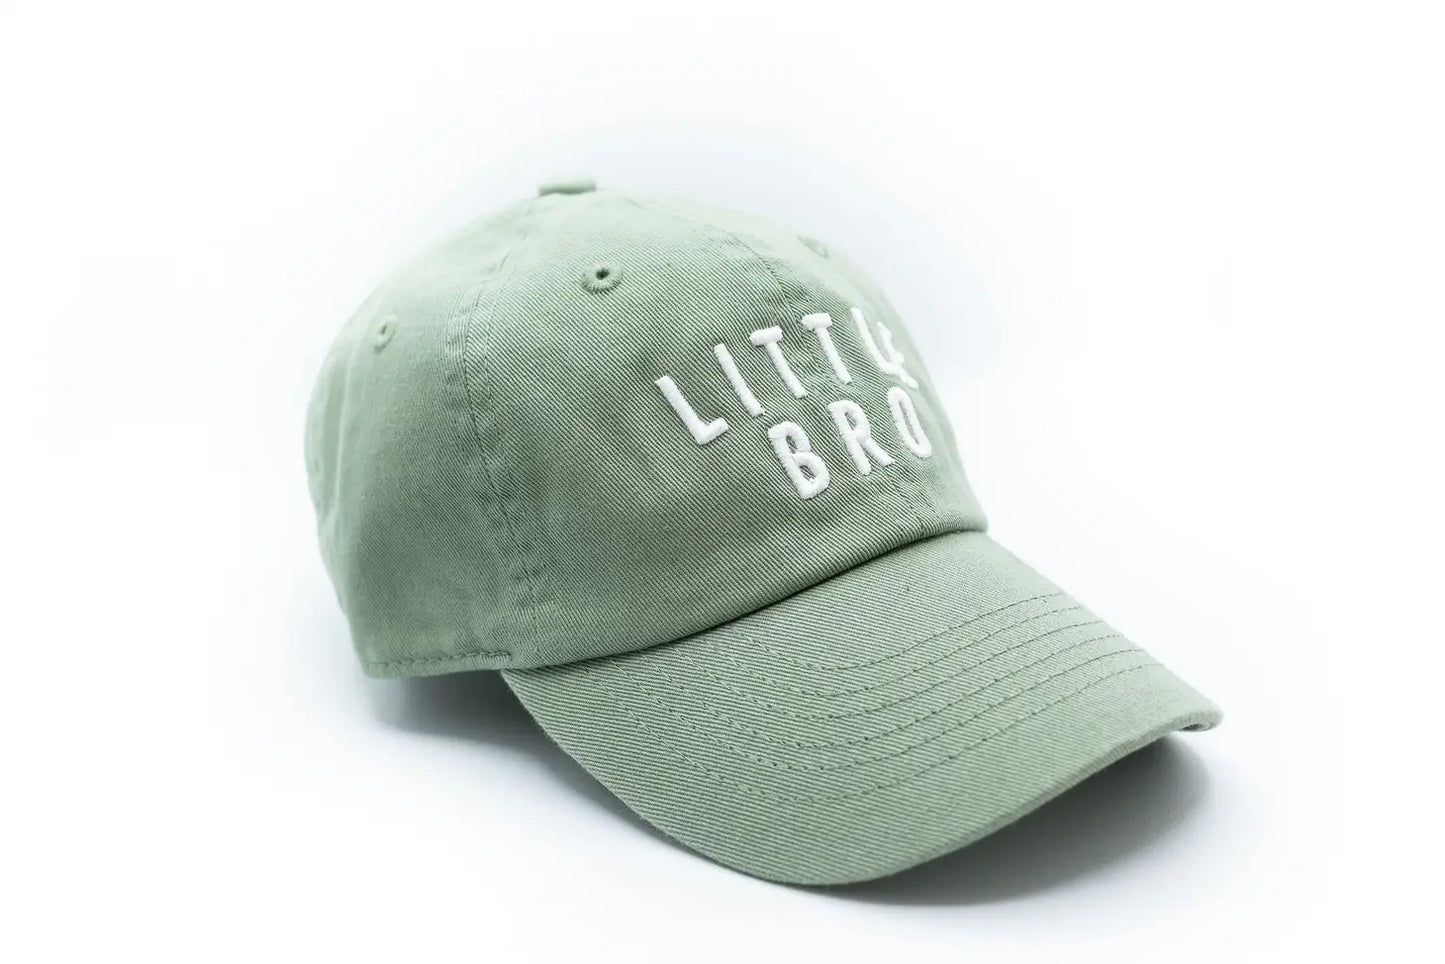 Sage Little Bro Hat